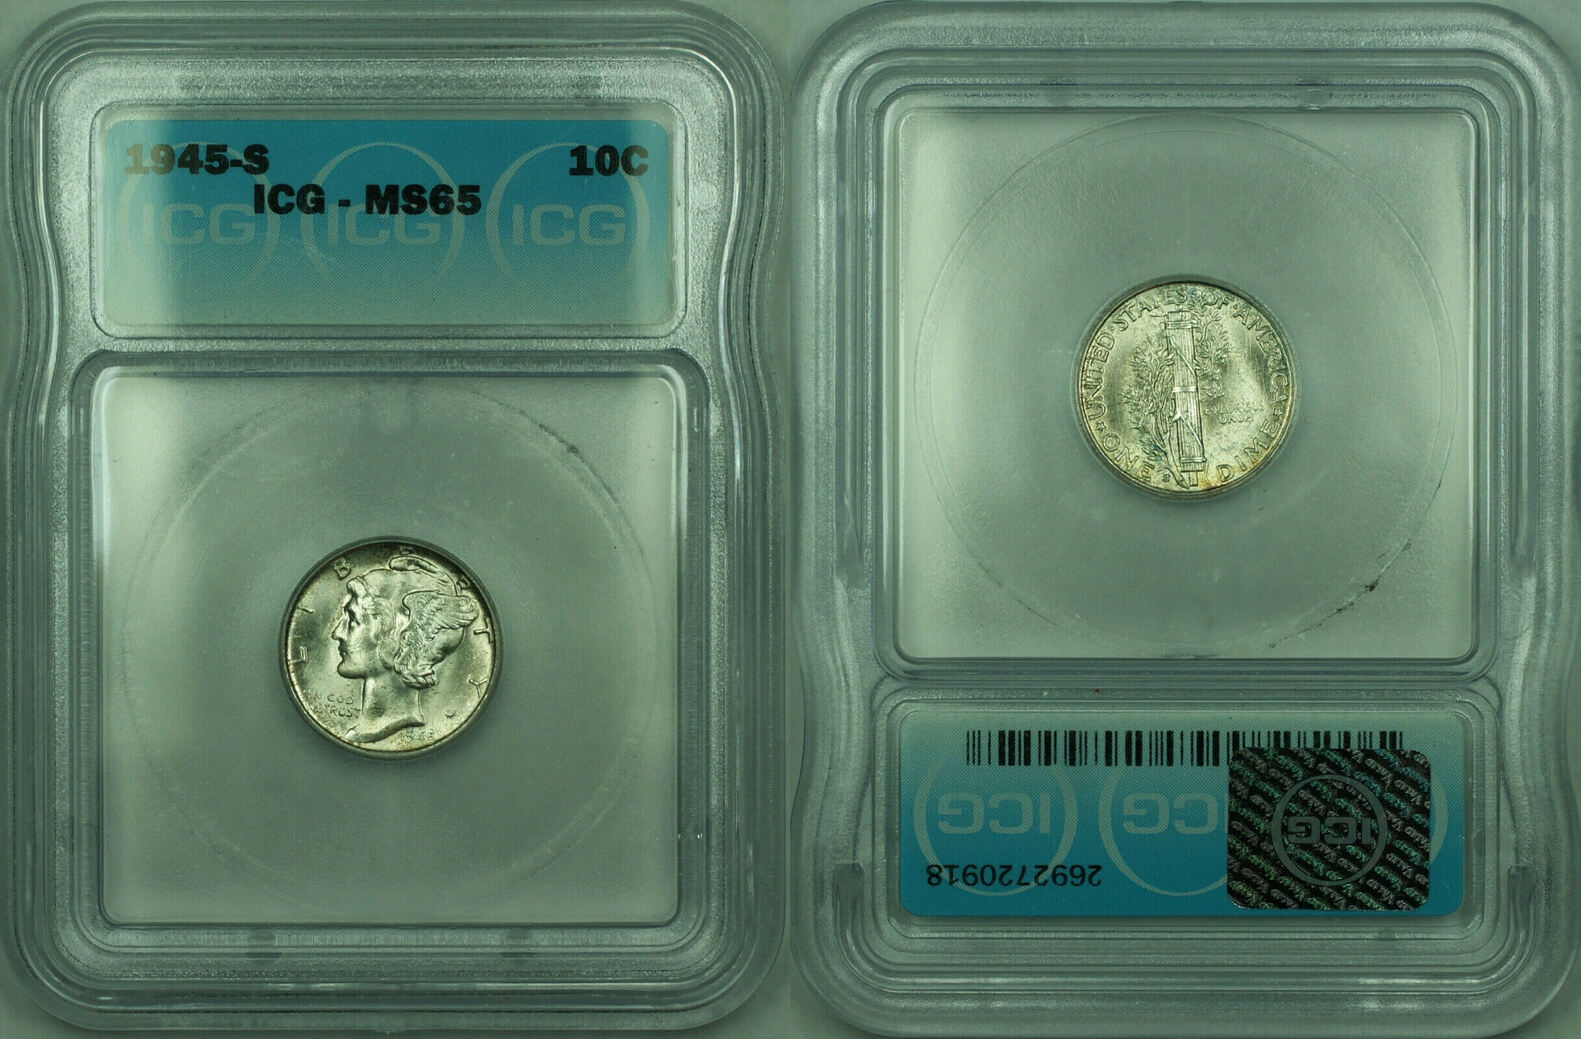 USA Dime 1945-S Mercury Silver 10c Coin ICG MS-65 (JJJ) | MA-Shops